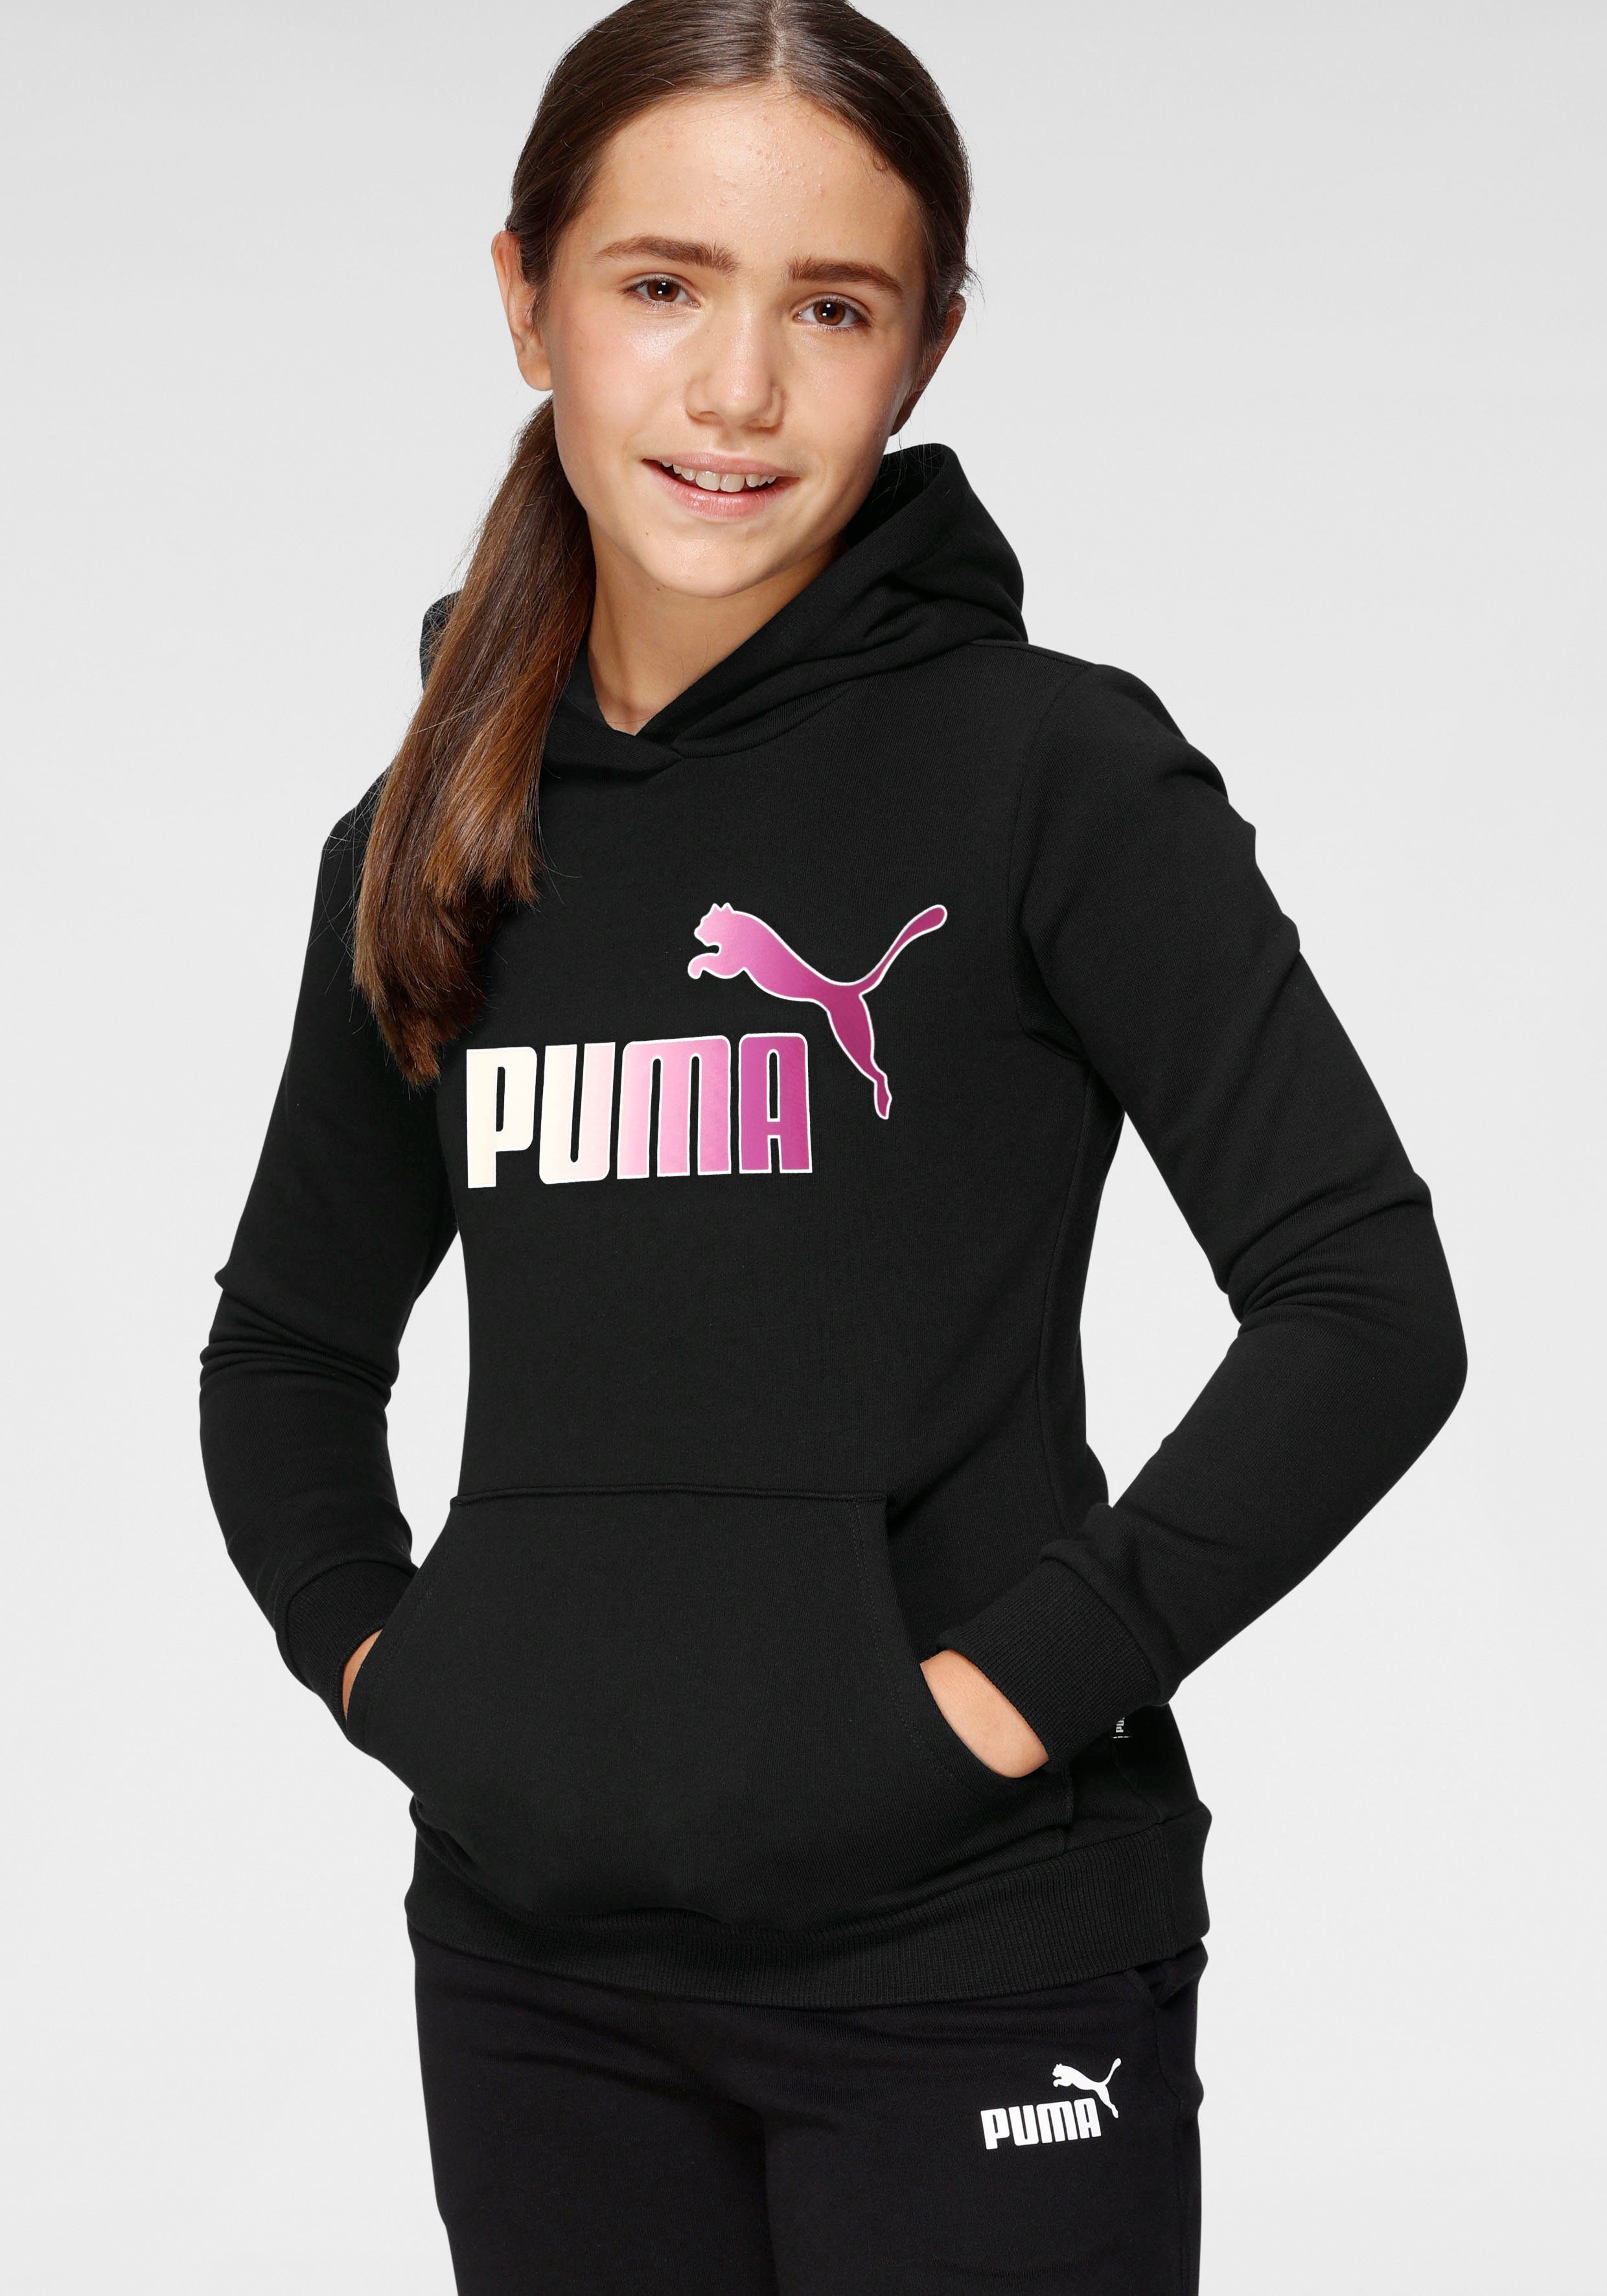 PUMA Pullover Mädchen online kaufen | OTTO